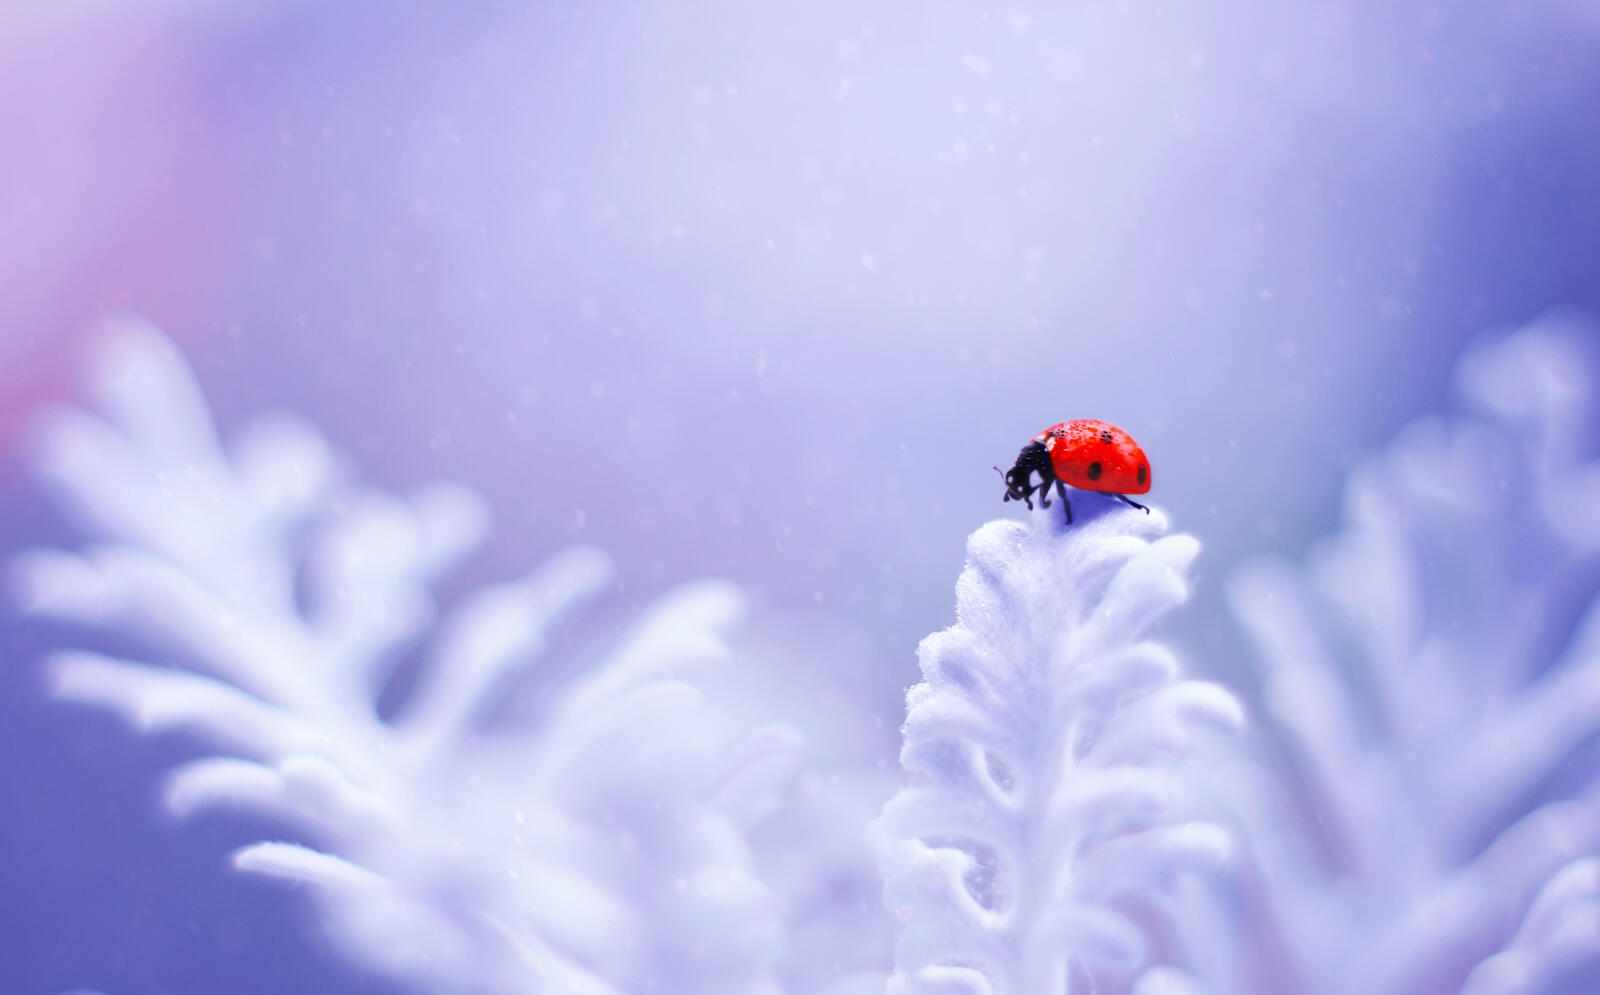 Wallpapers macro bug ladybug on the desktop